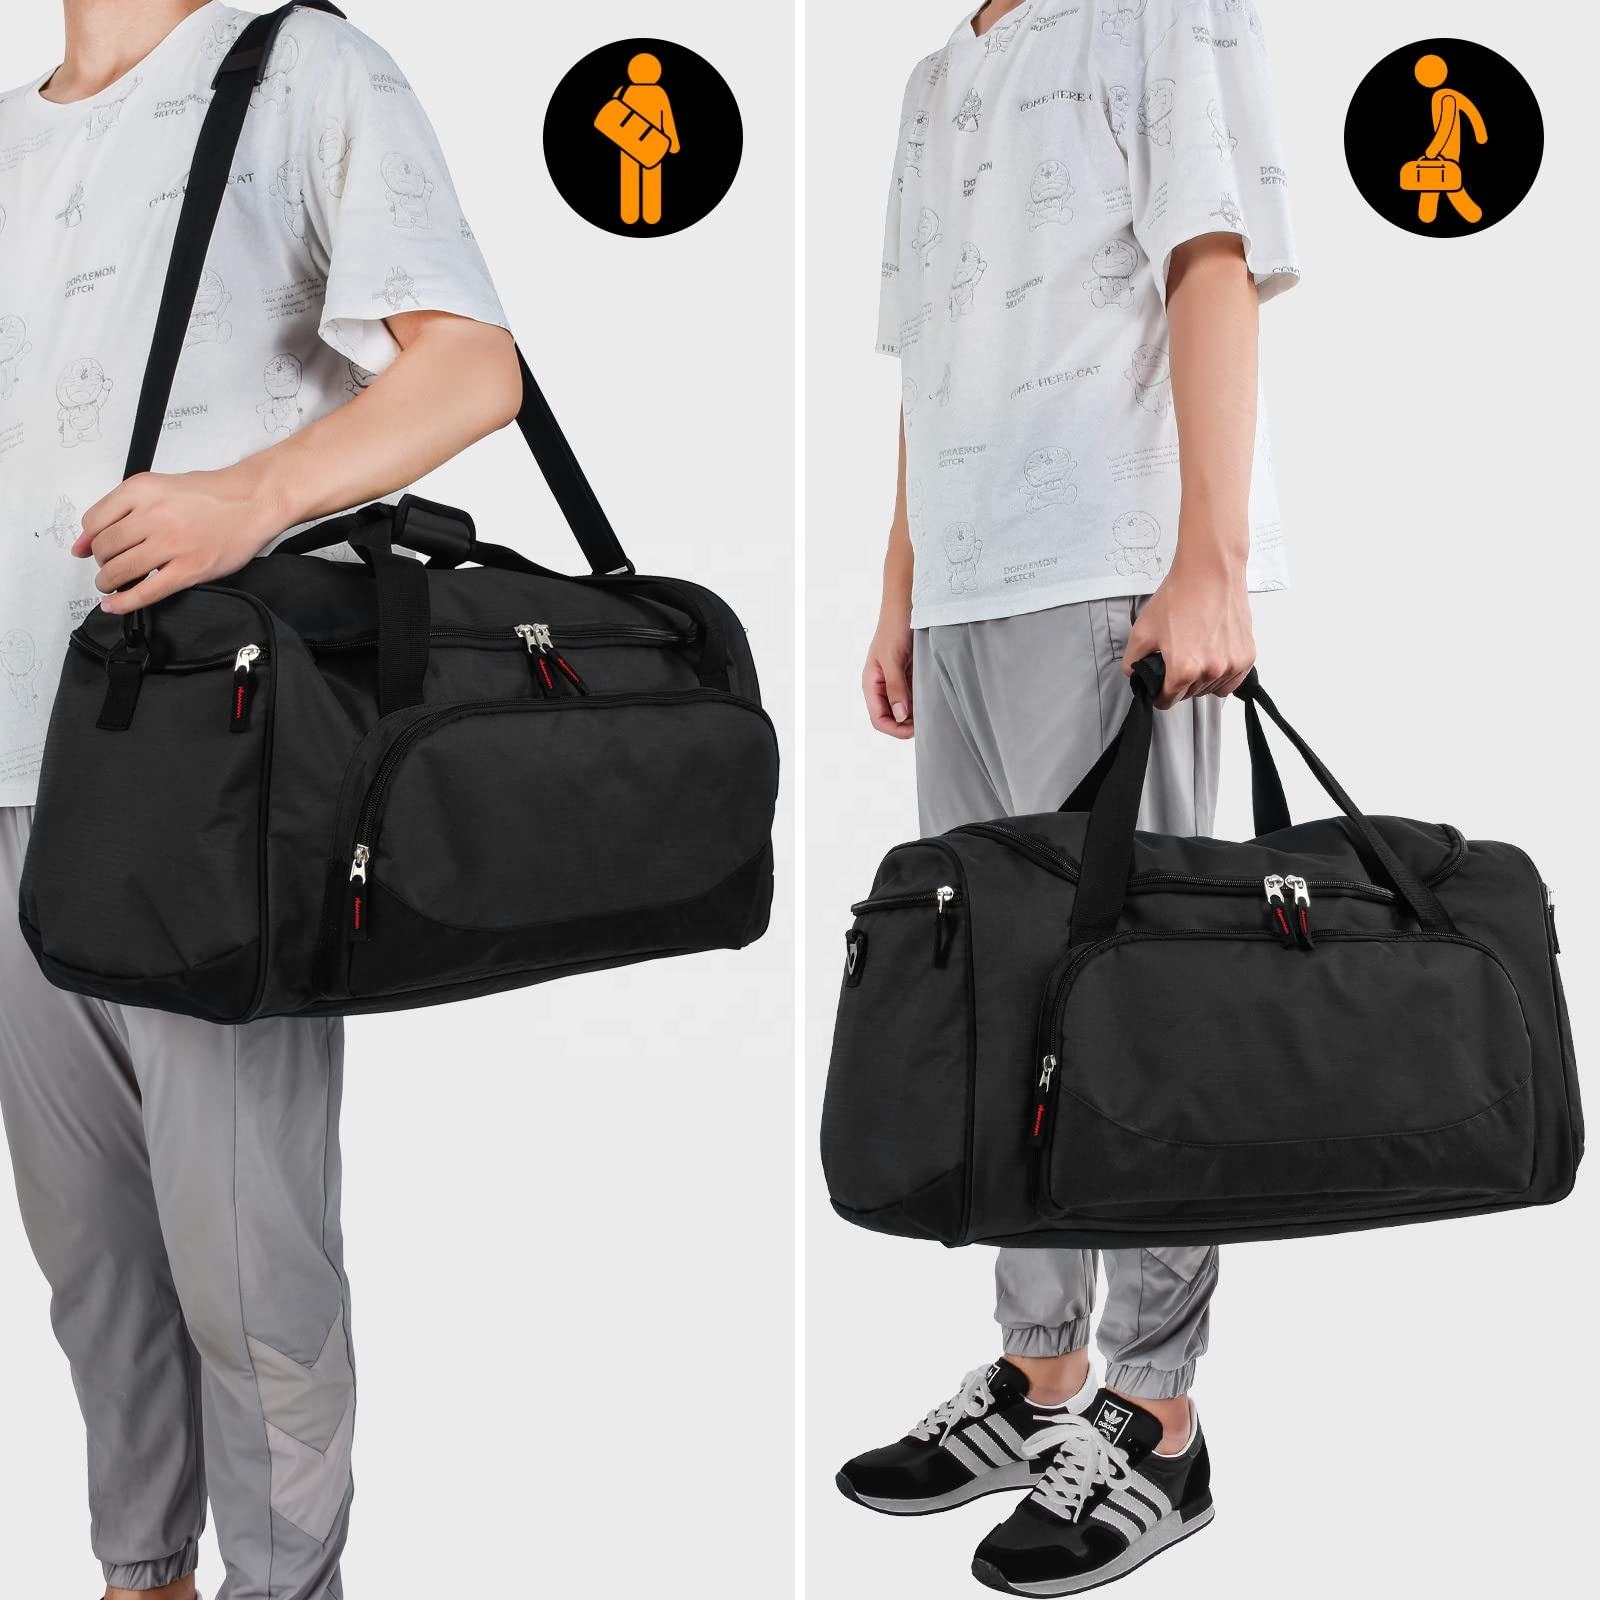 Hochwertige benutzerdefinierte multifunktionale Polyester-Sport-Umhängetasche Gepäck Yoga-Matte Weekender Sport-Fitness-Duffle-Tasche